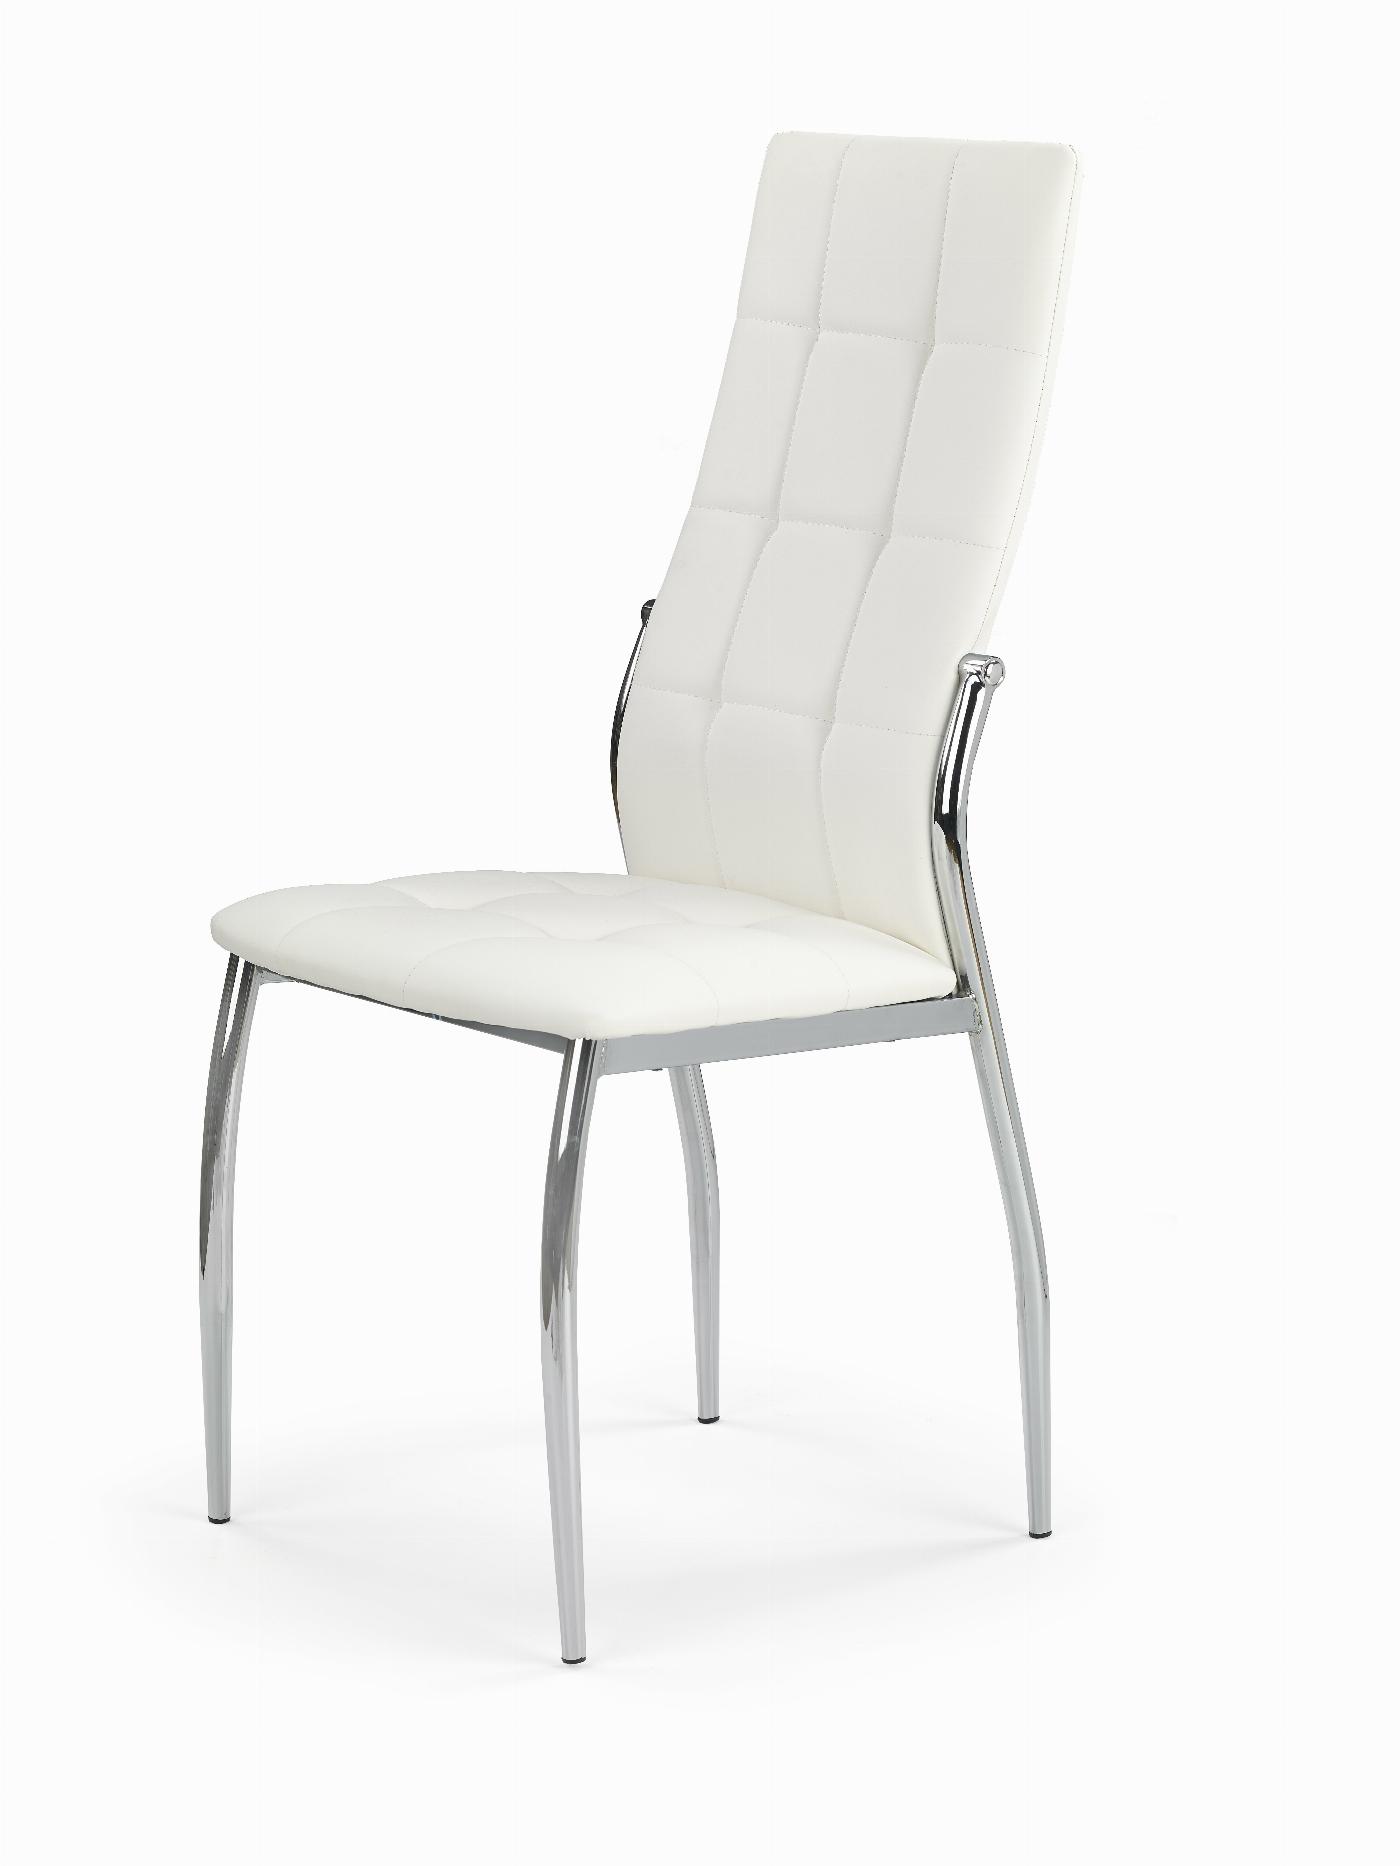 K209 krzesło biały (1p=4szt)